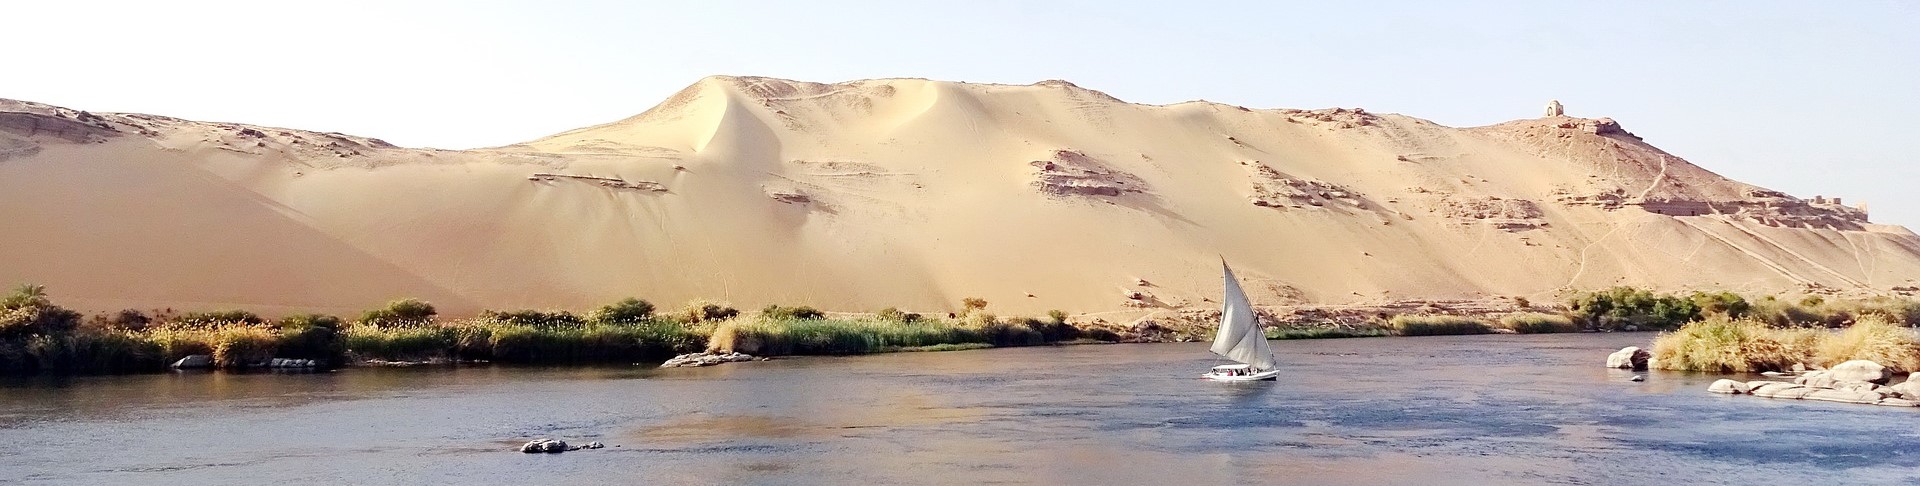 Aswan|アスワン